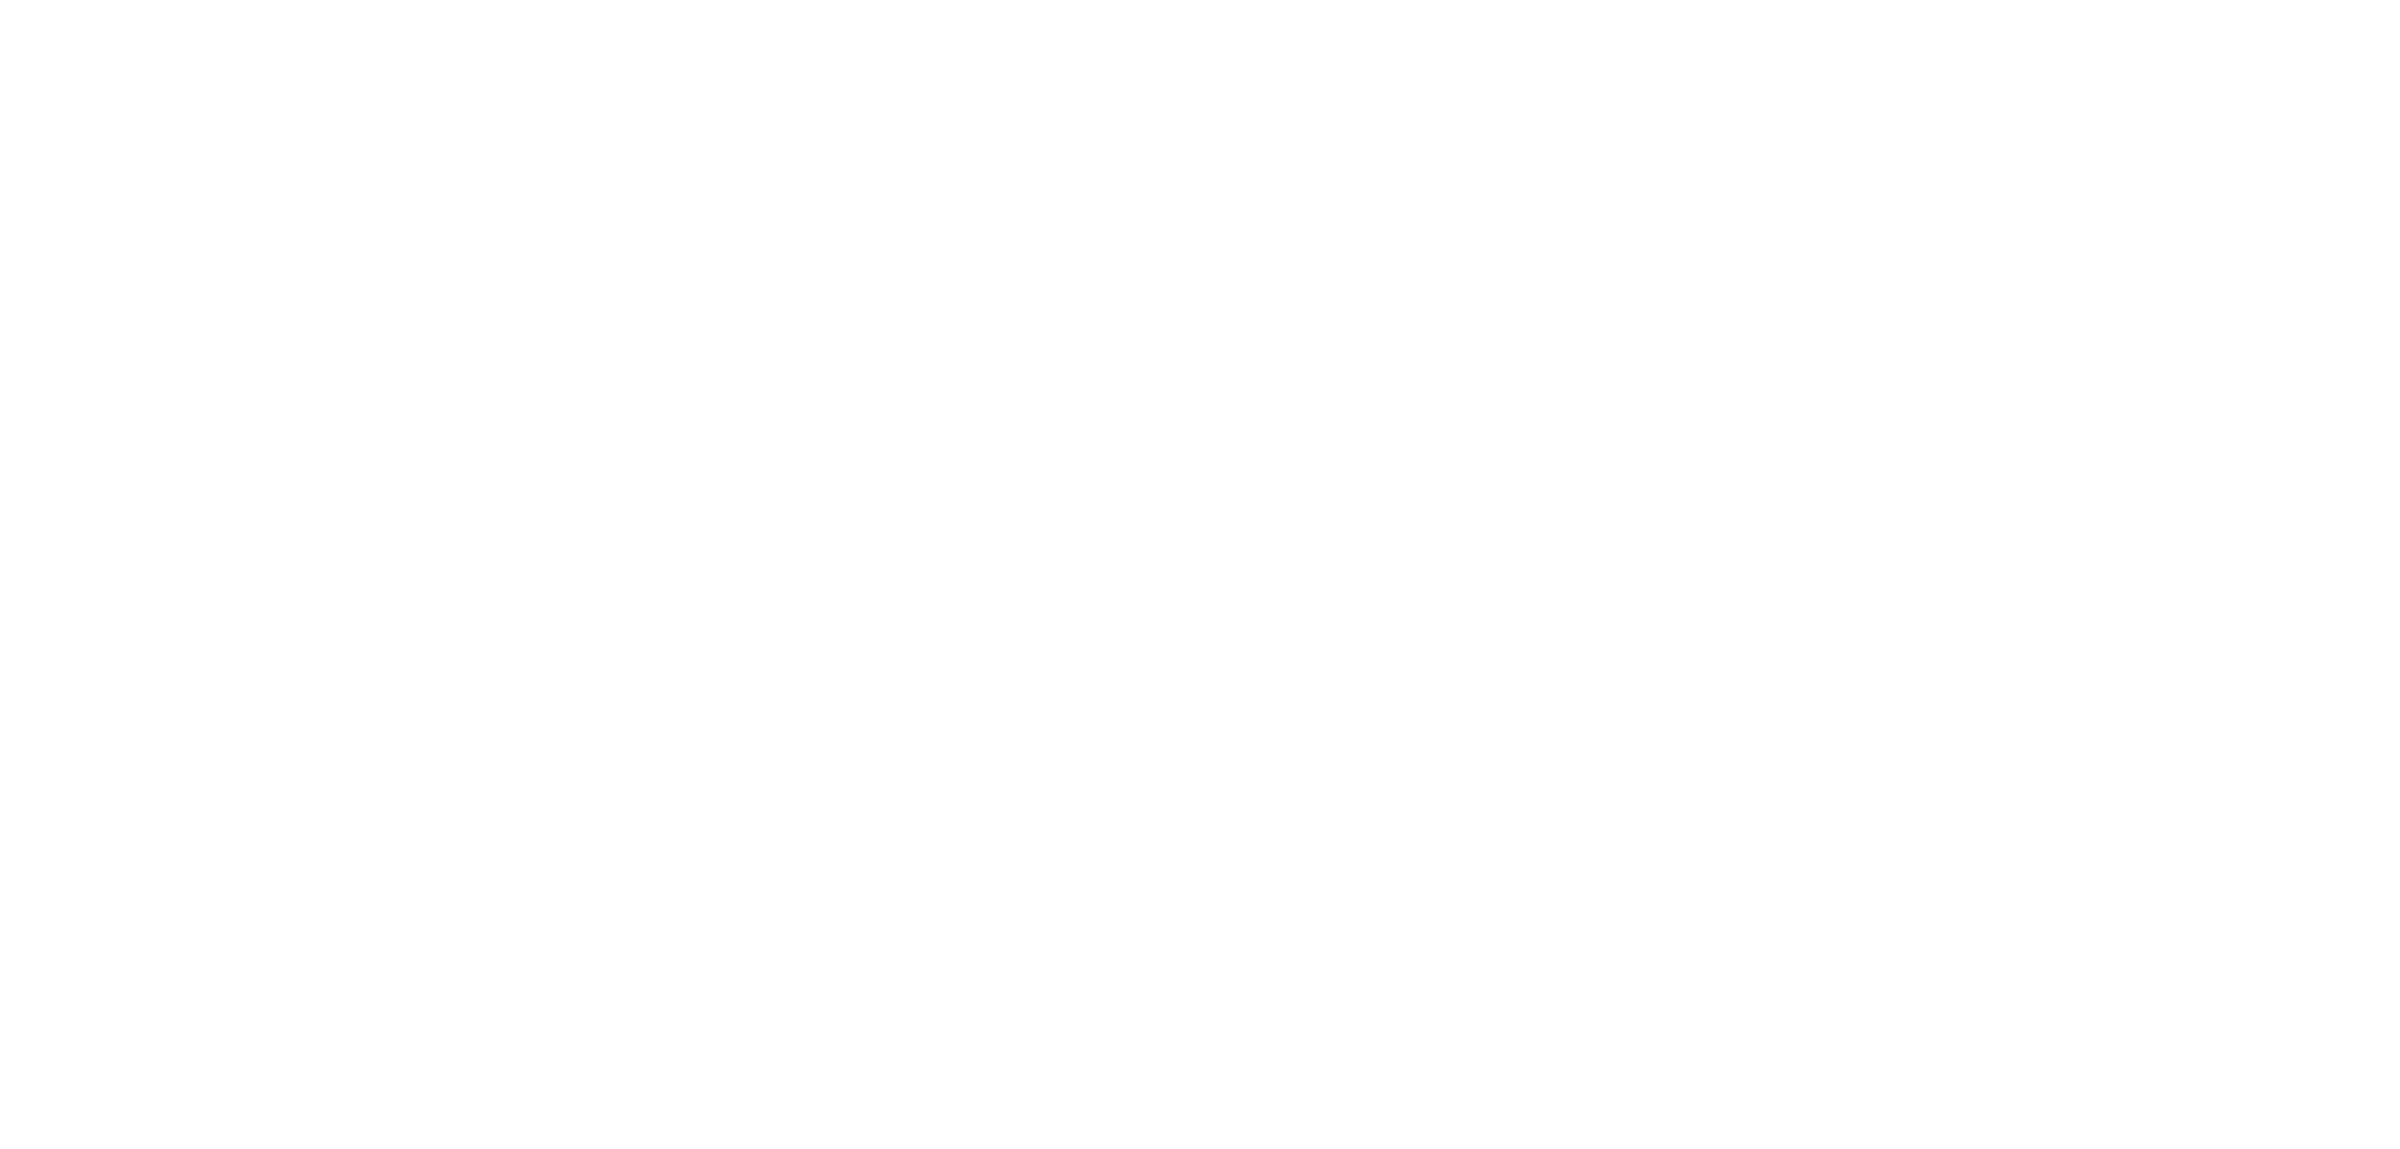 saorazvitie logo white